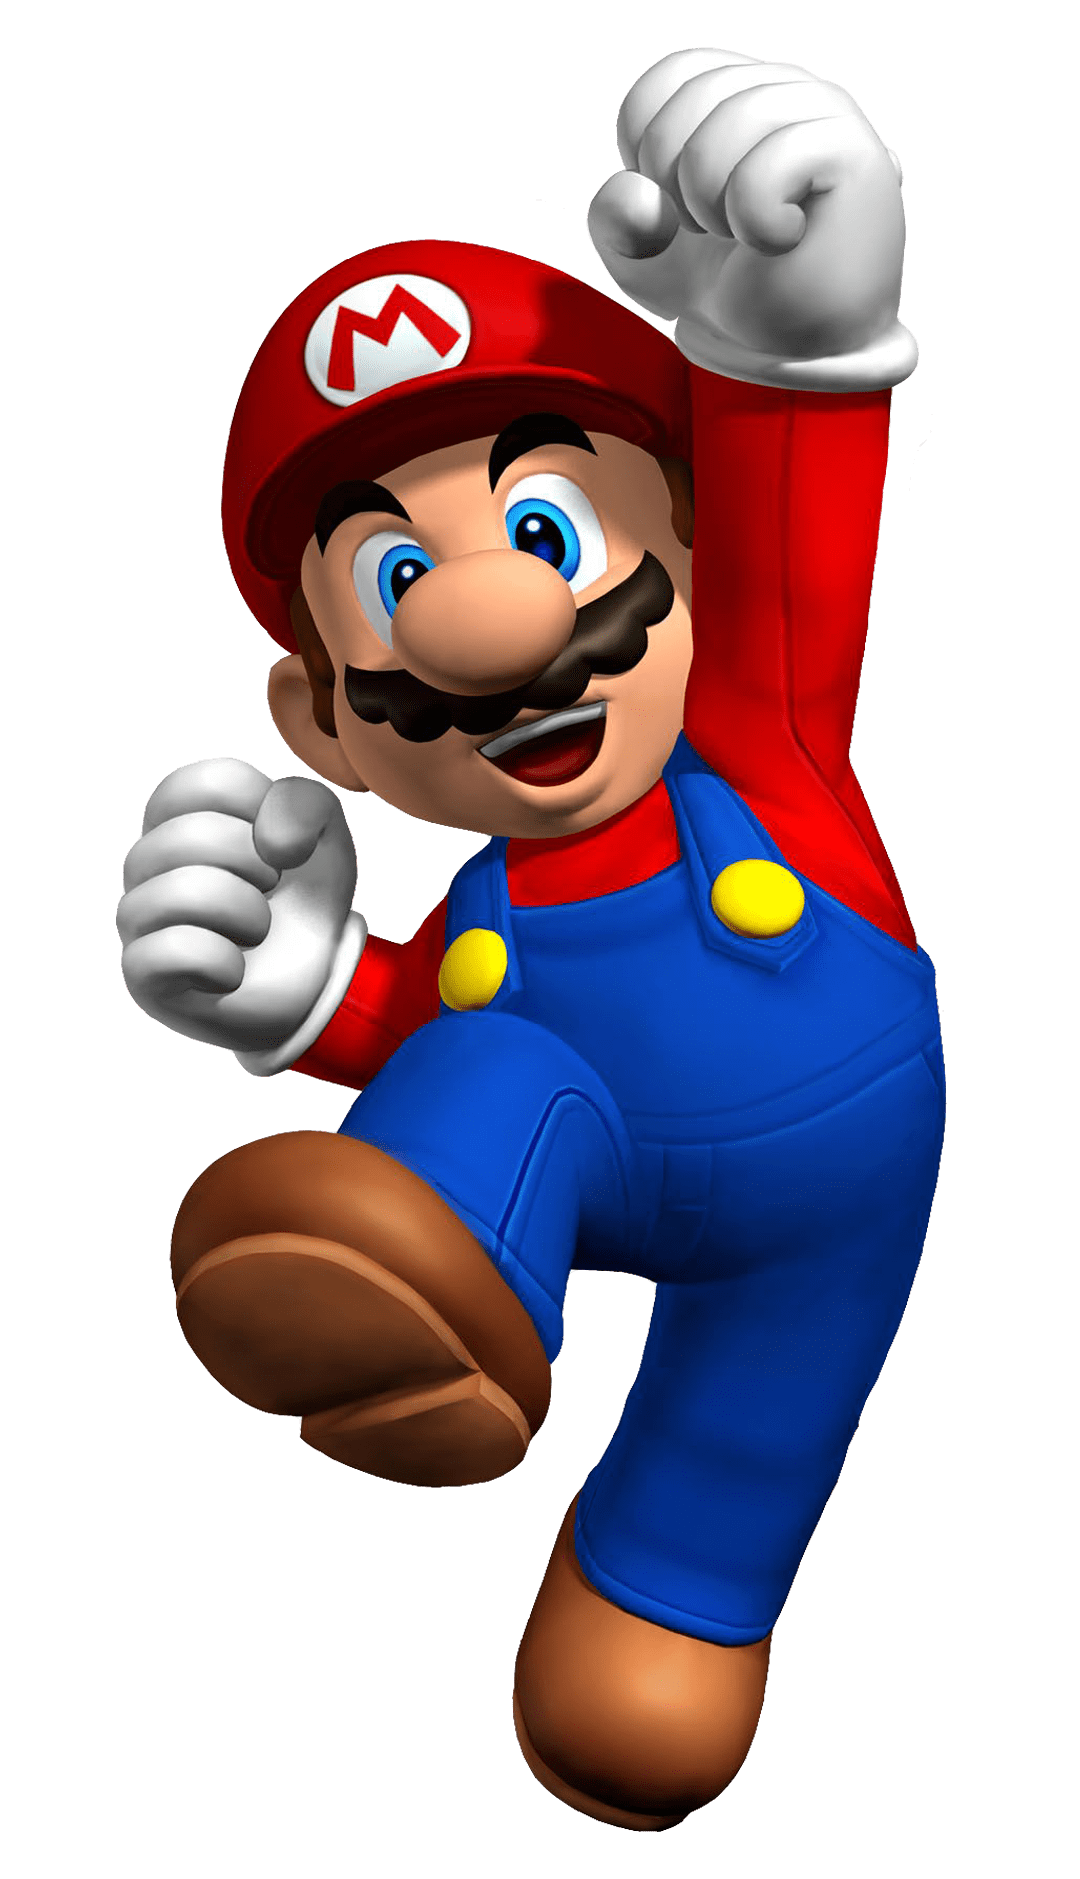 Mario Super Bros Download HD PNG Image